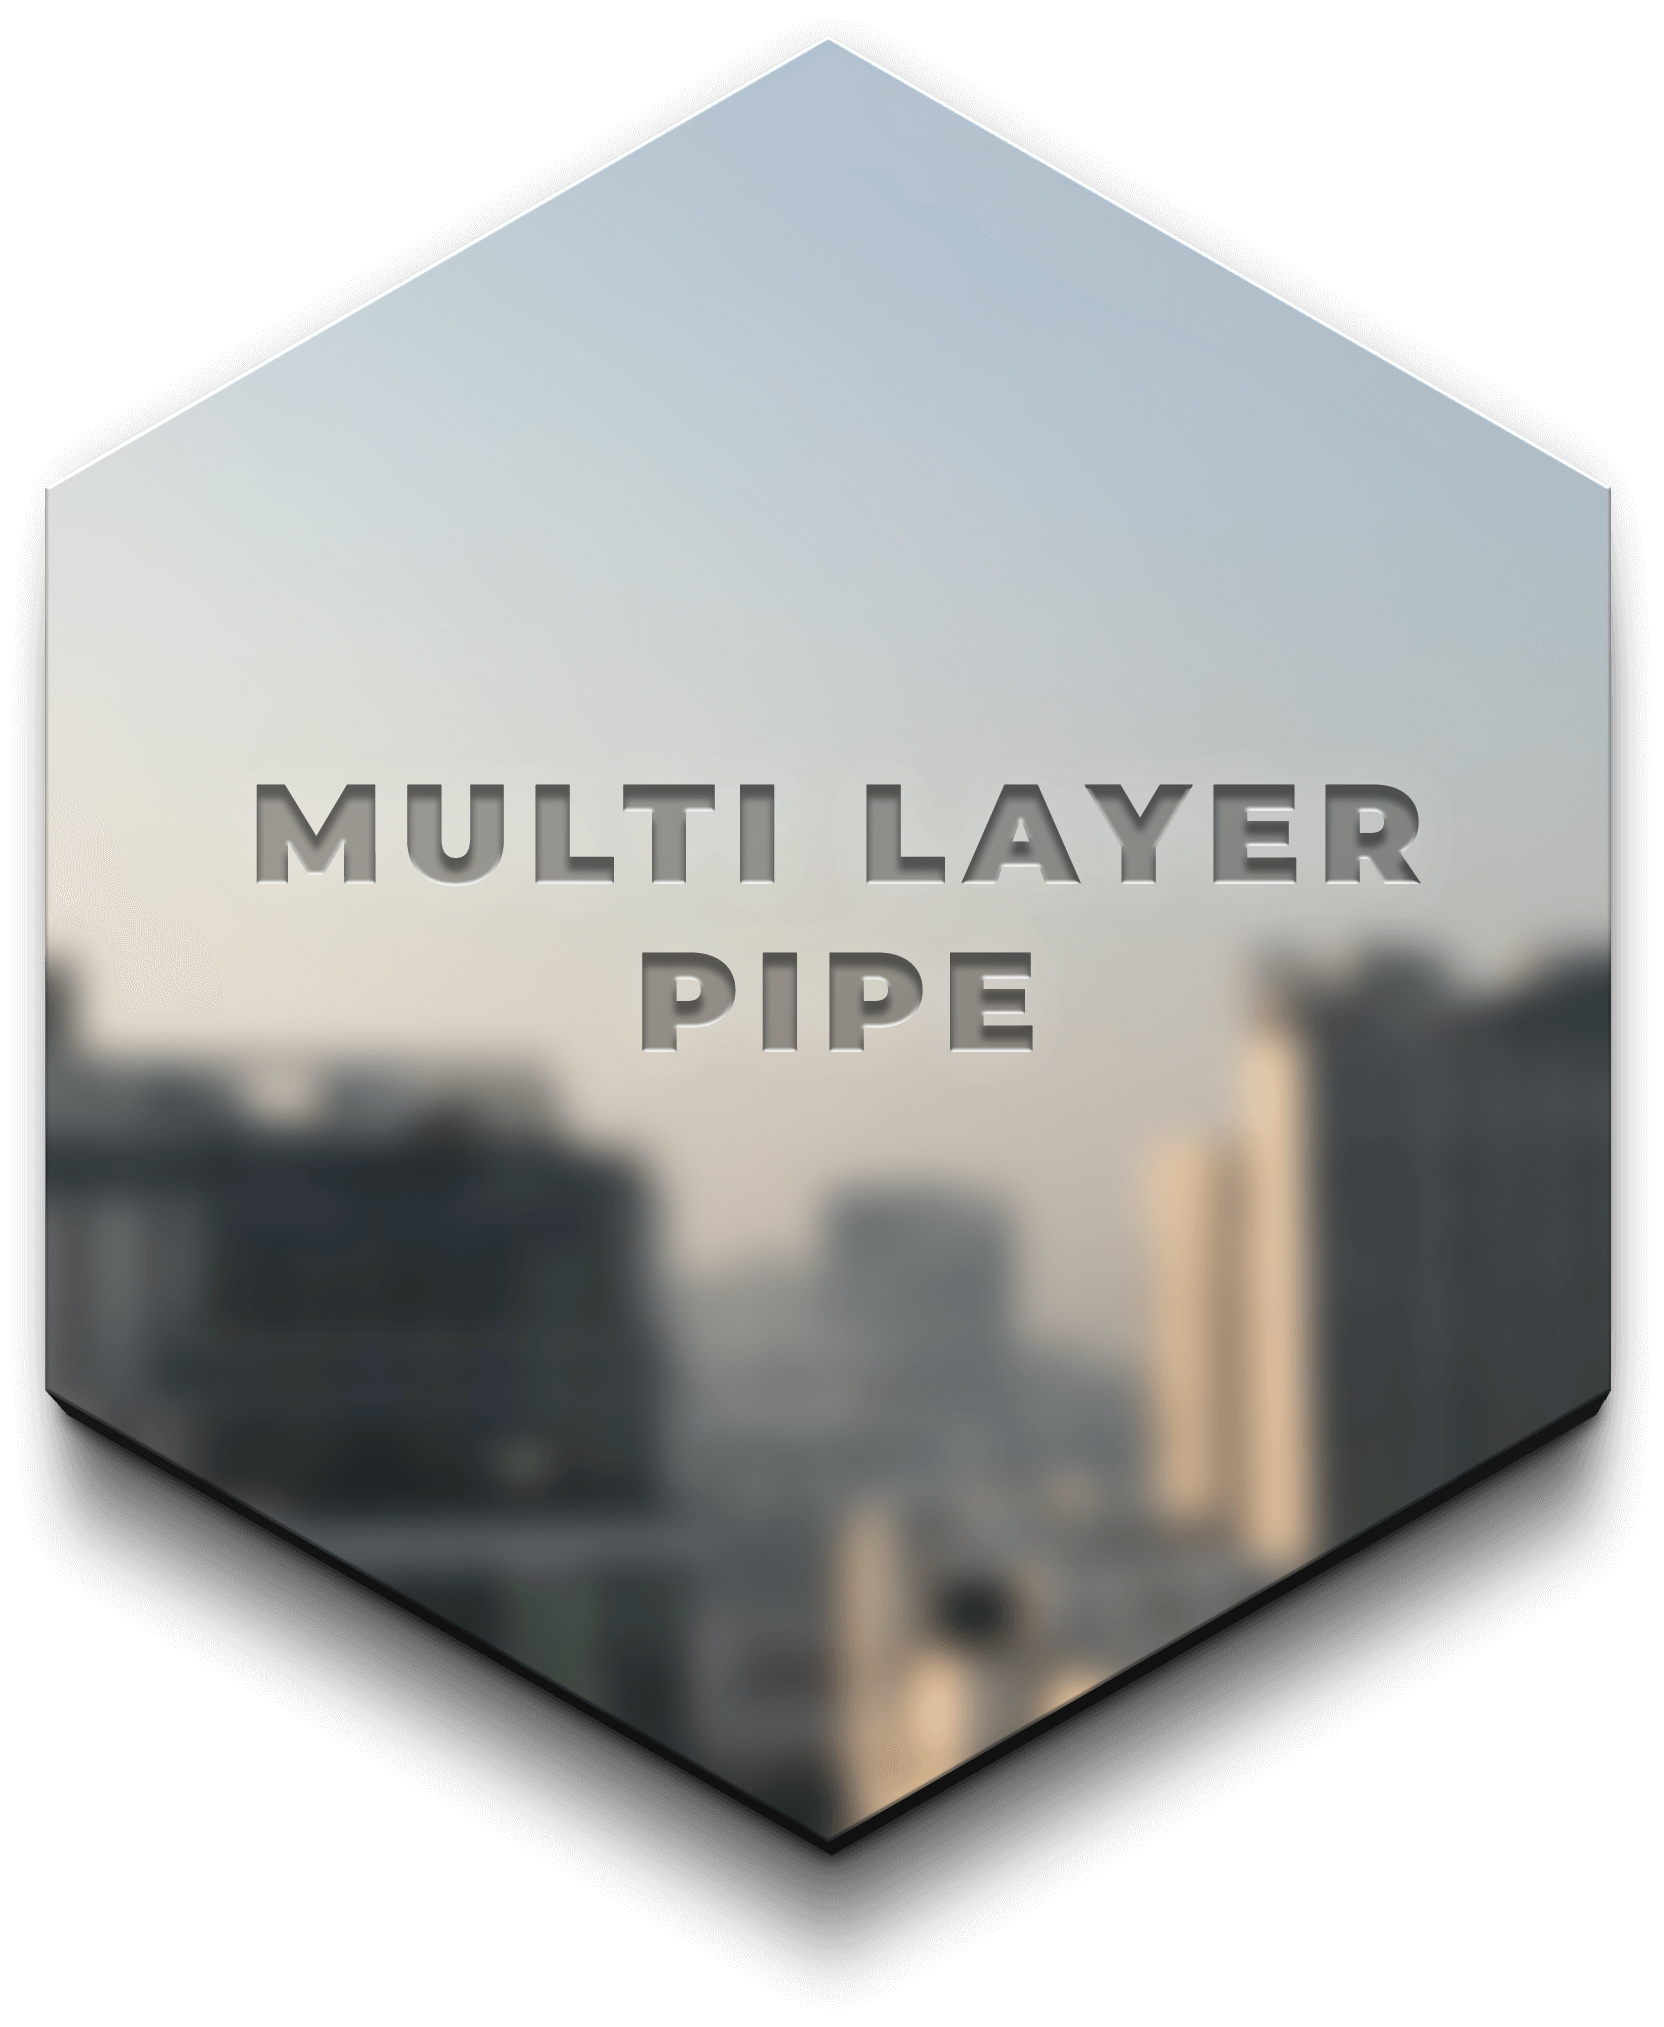 Multi layer pipe